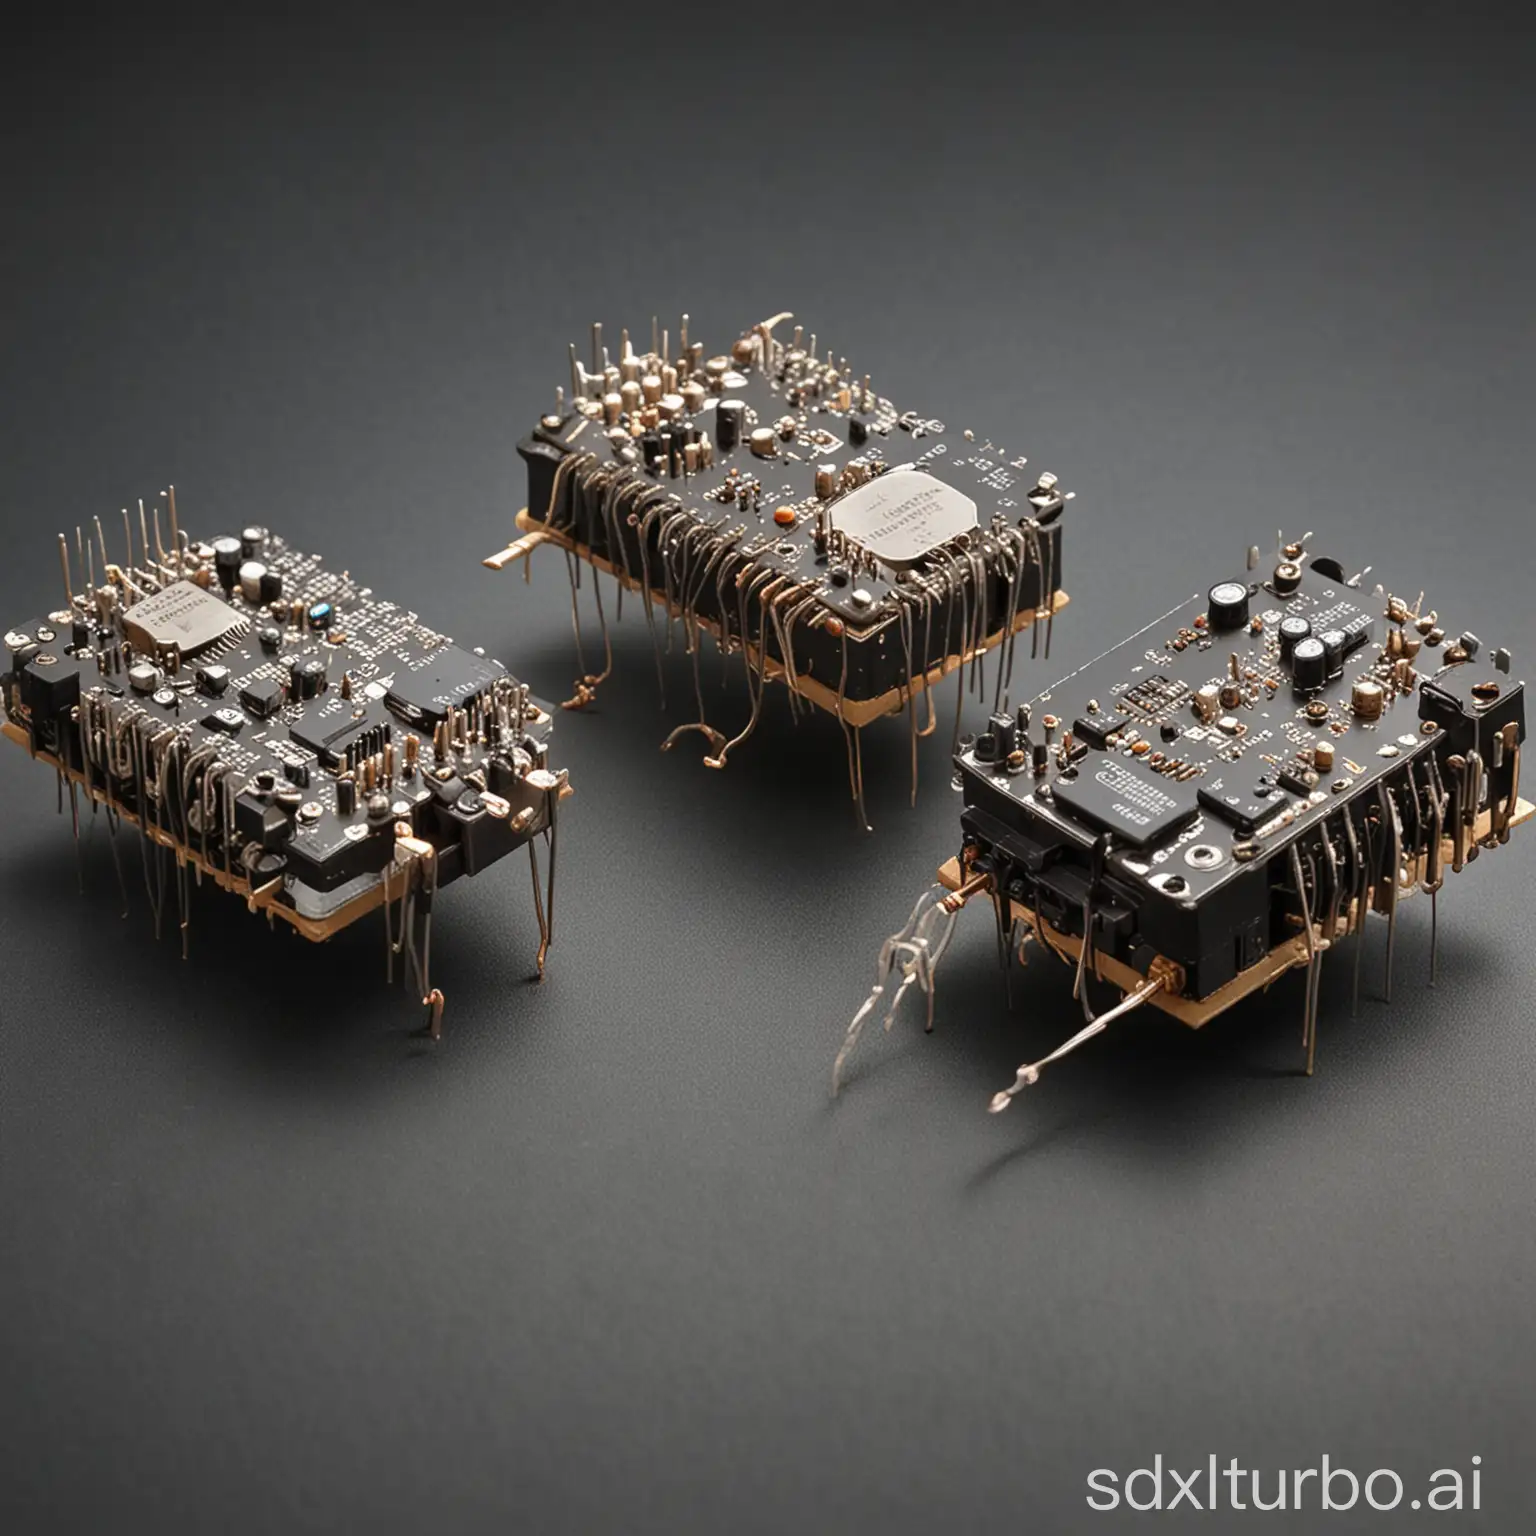 photo of electronic oscillators